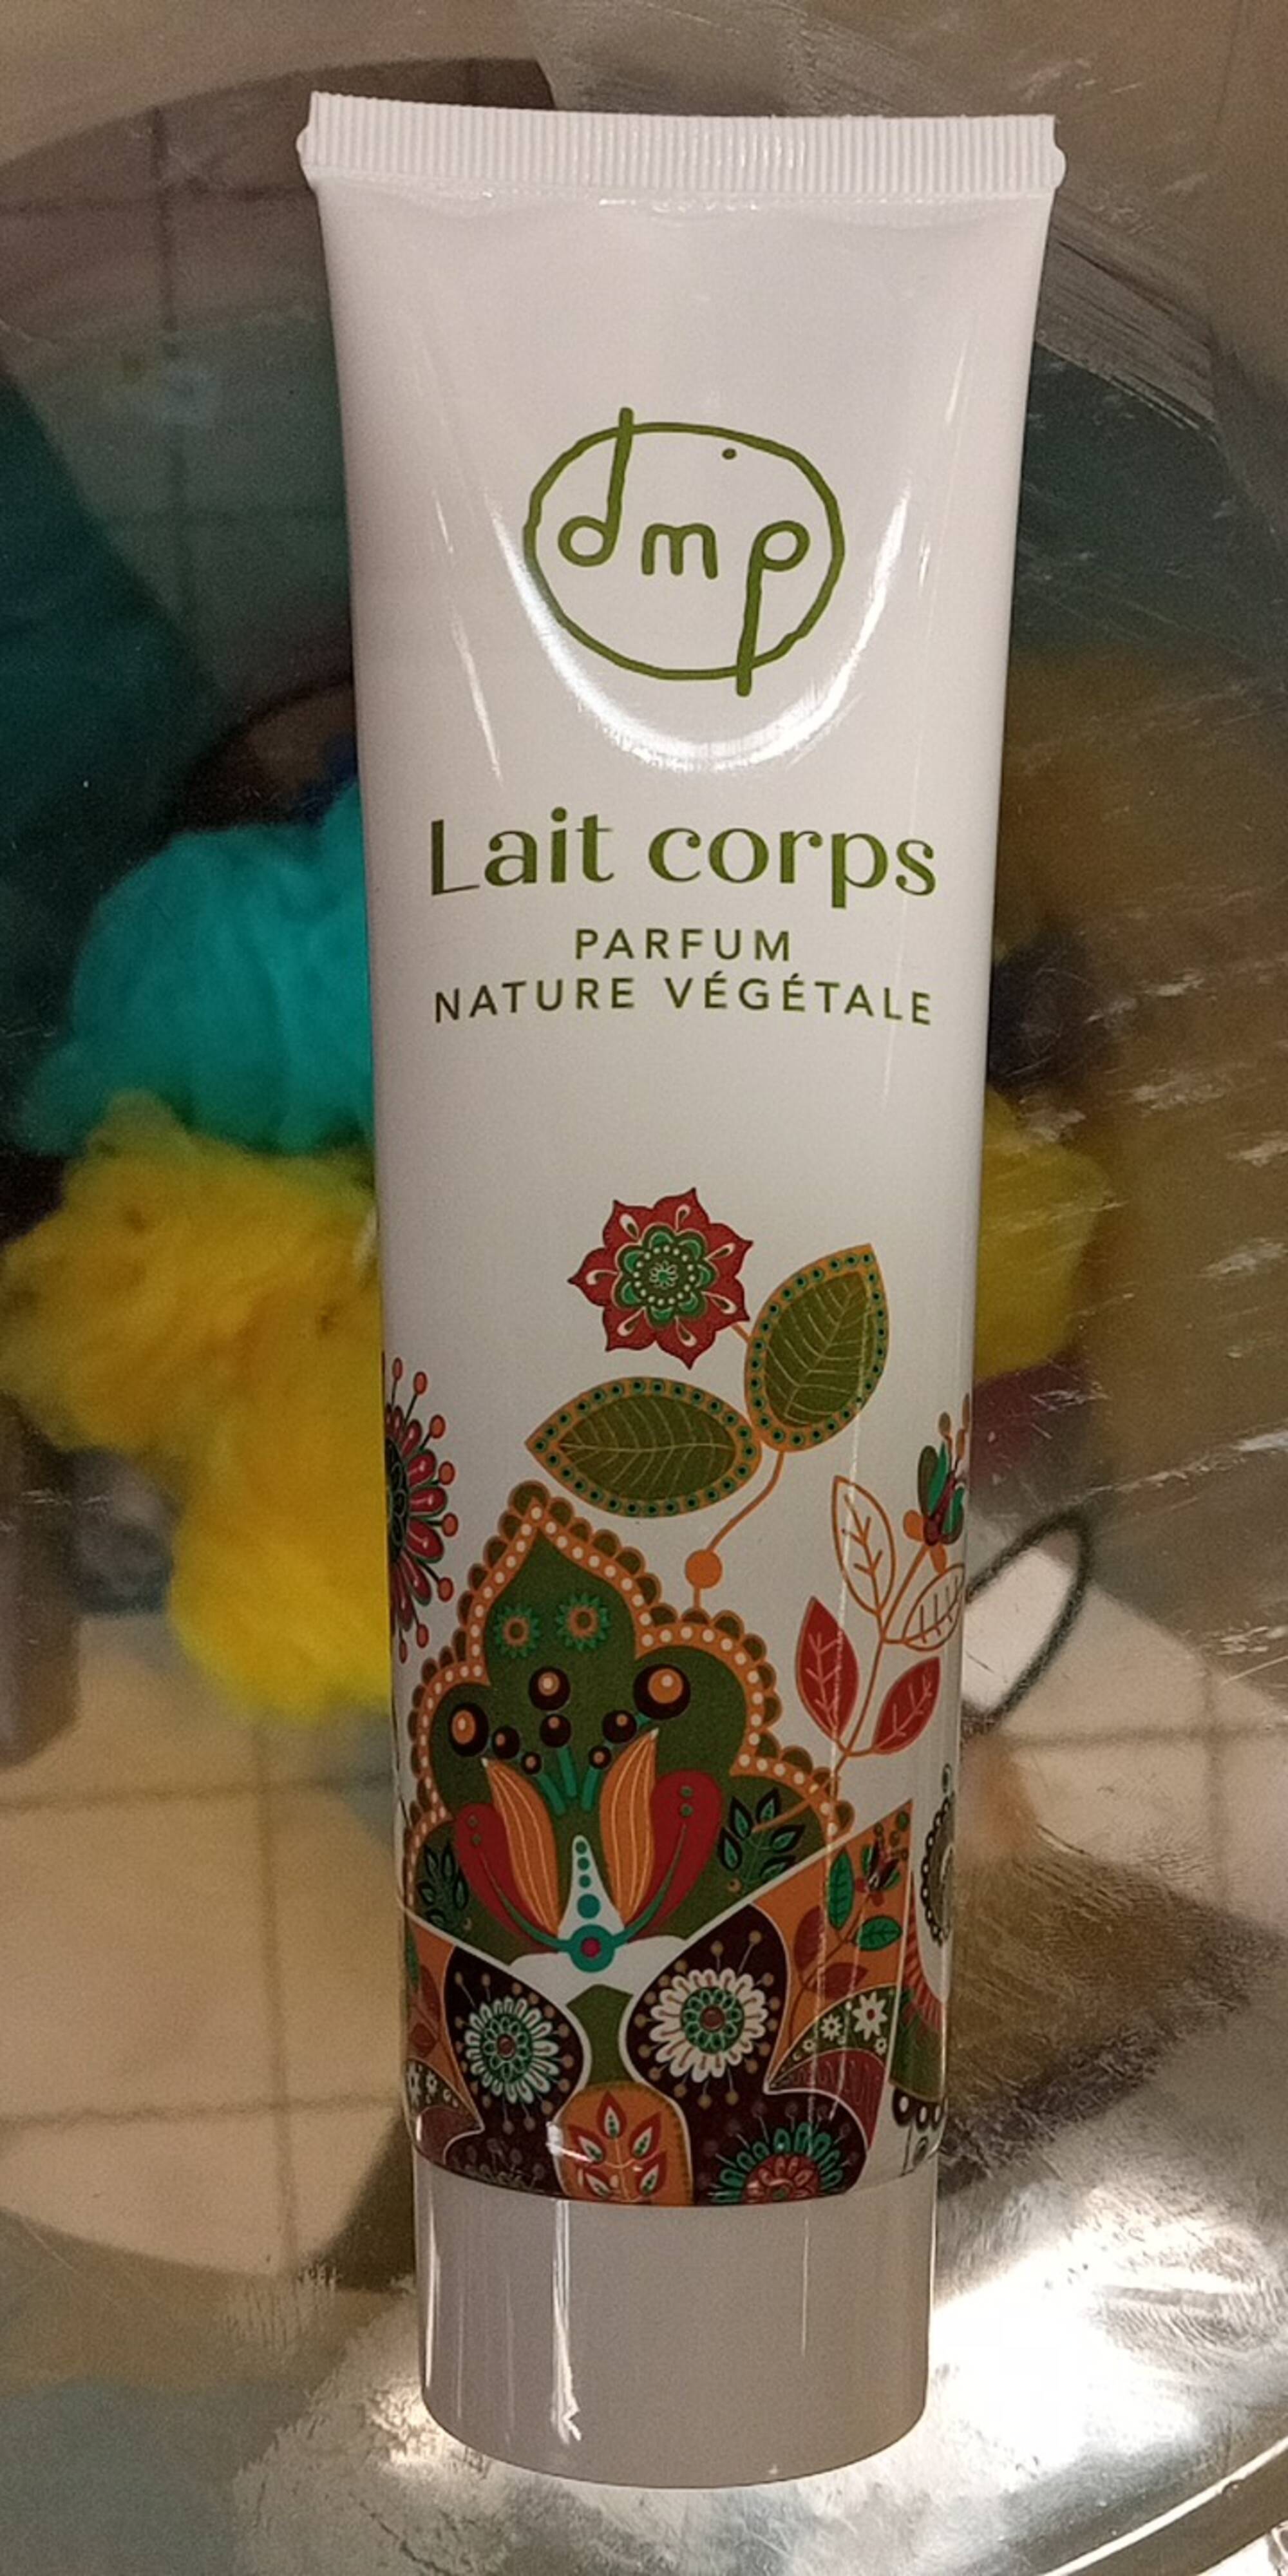 DMP - Lait corps parfum nature végétale